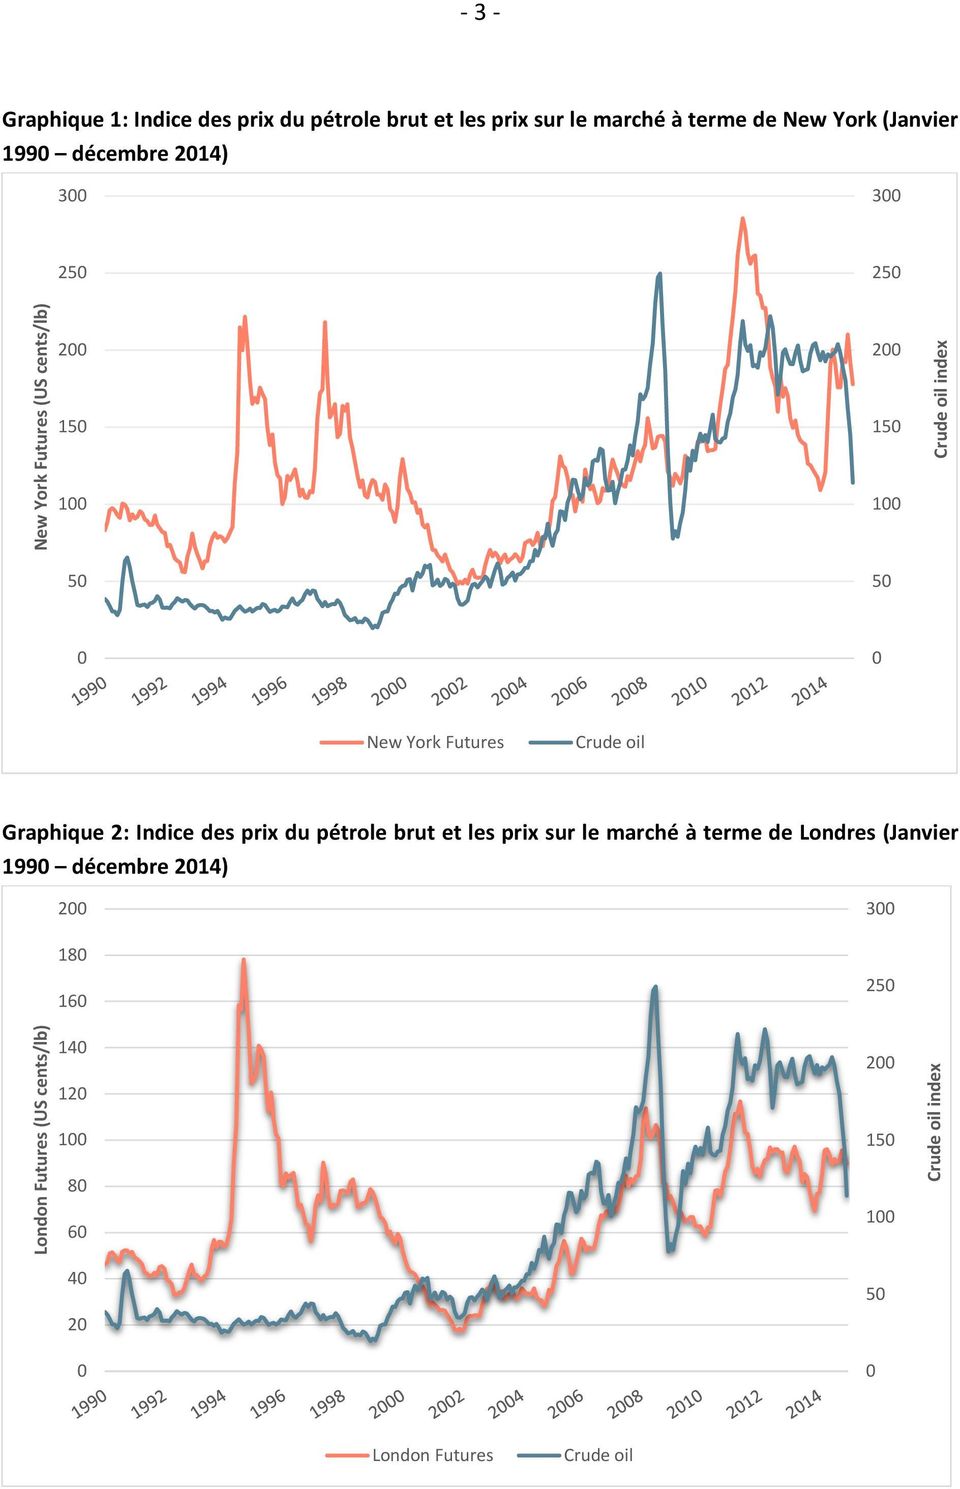 Graphique 2: Indice des prix du pétrole brut et les prix sur le marché à terme de Londres (Janvier 1990 décembre